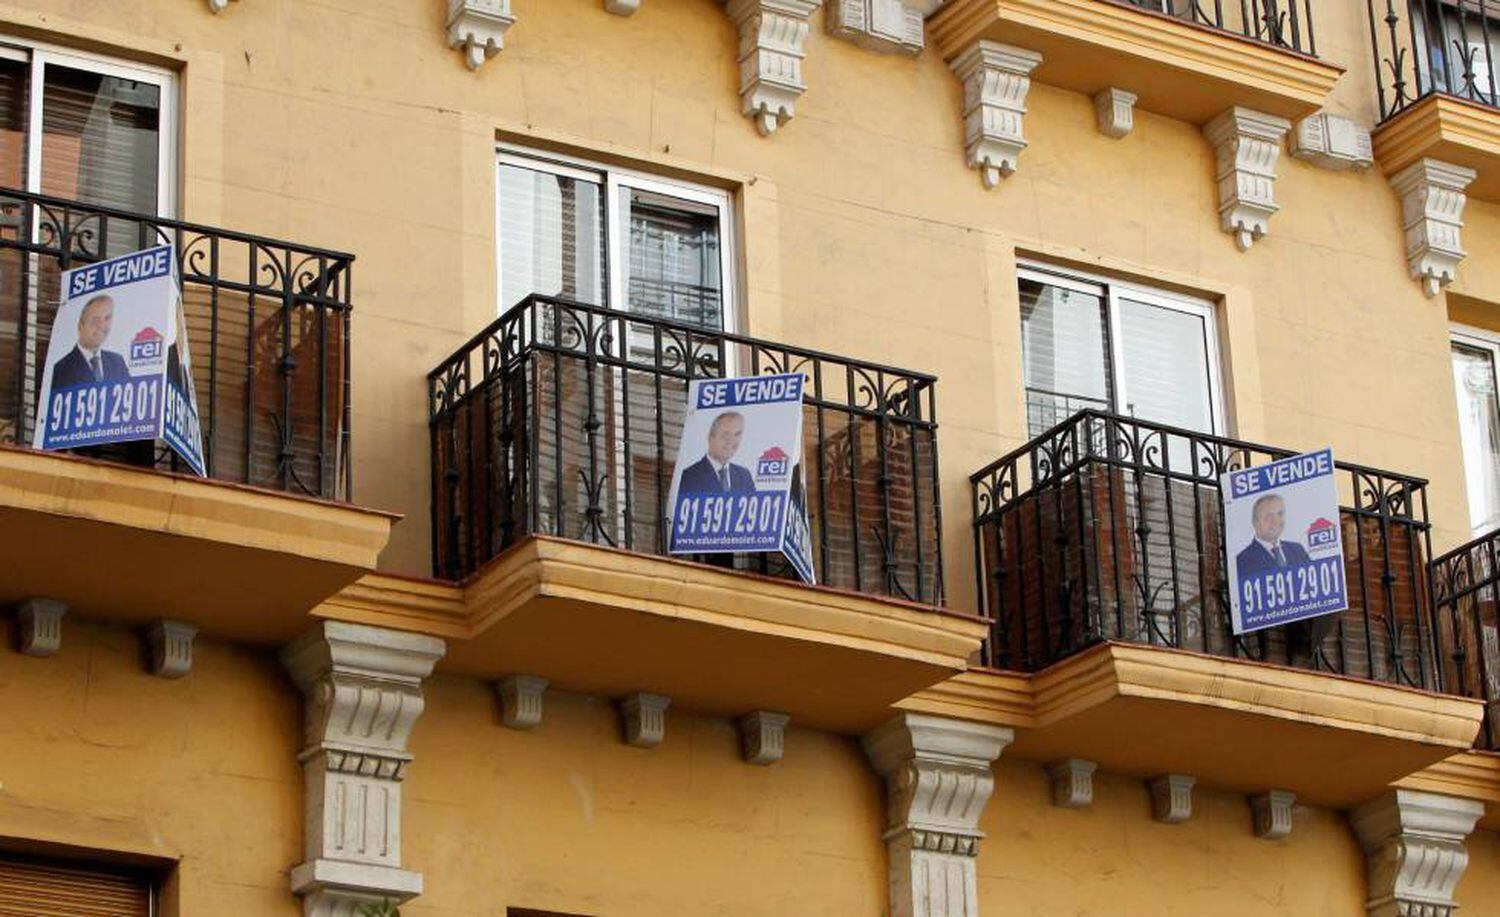 Anuncios de venta de viviendas en un edificio en Madrid., el pasado diciembre.